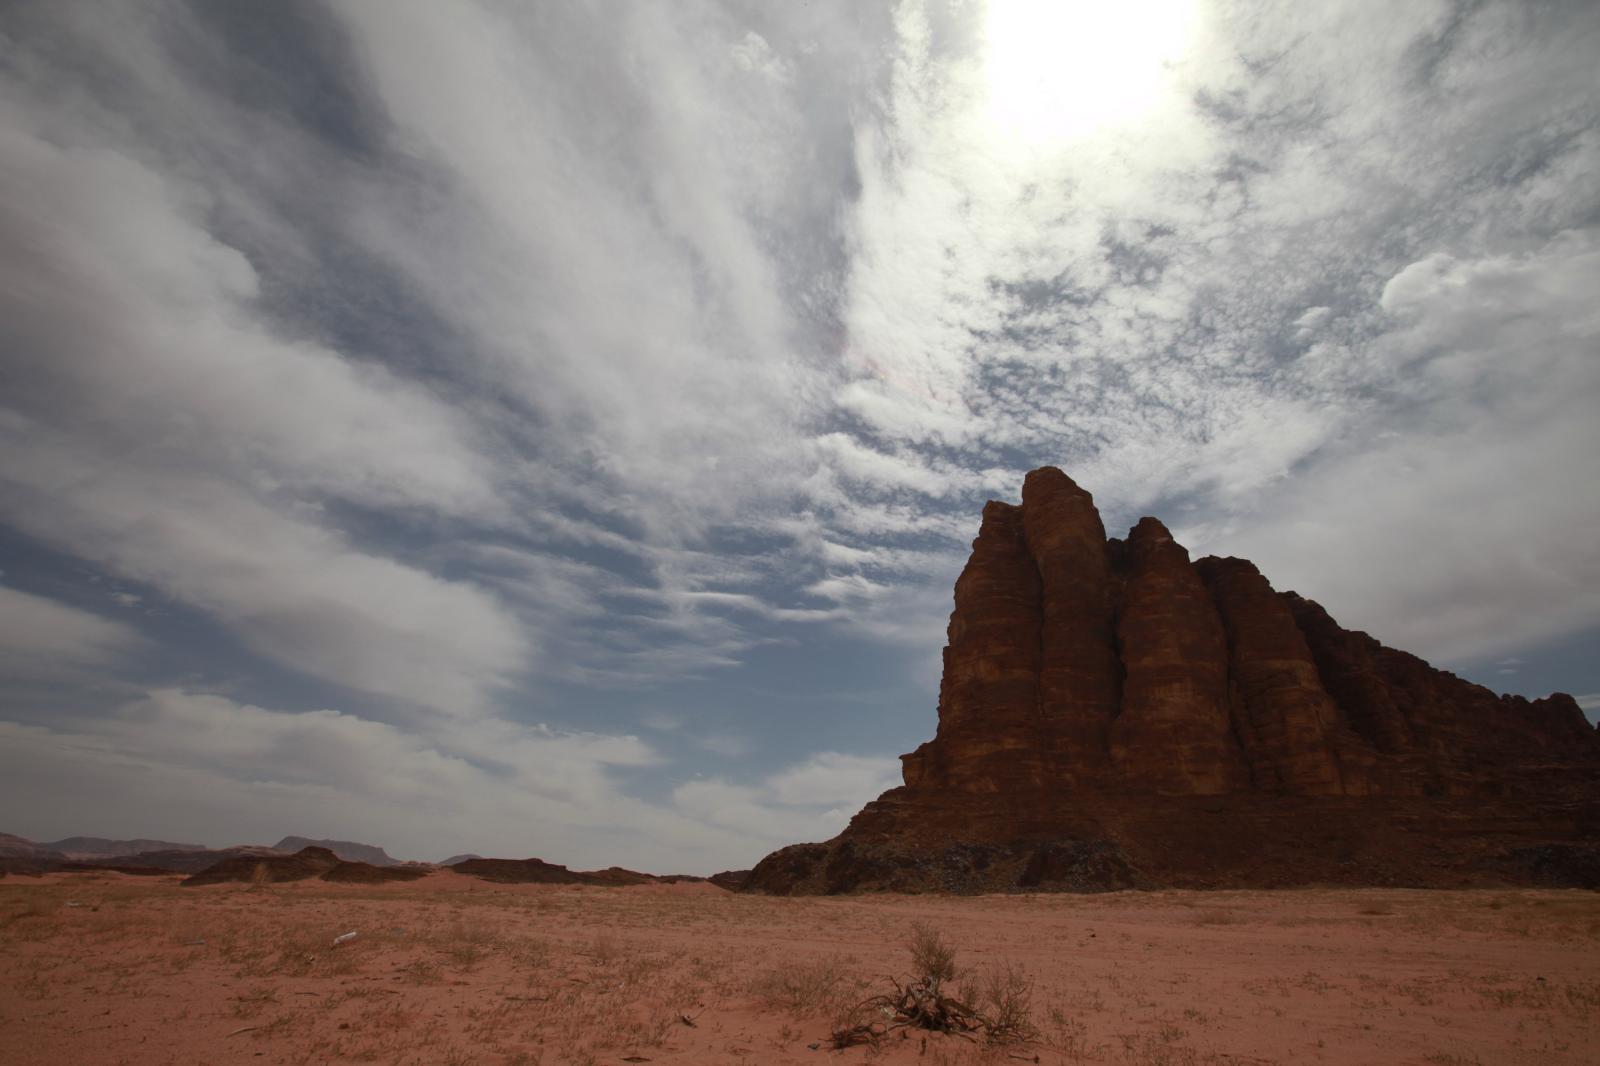 The Seven Pillars of Wisdom in Wadi Rum, Jordan  | Buy this image